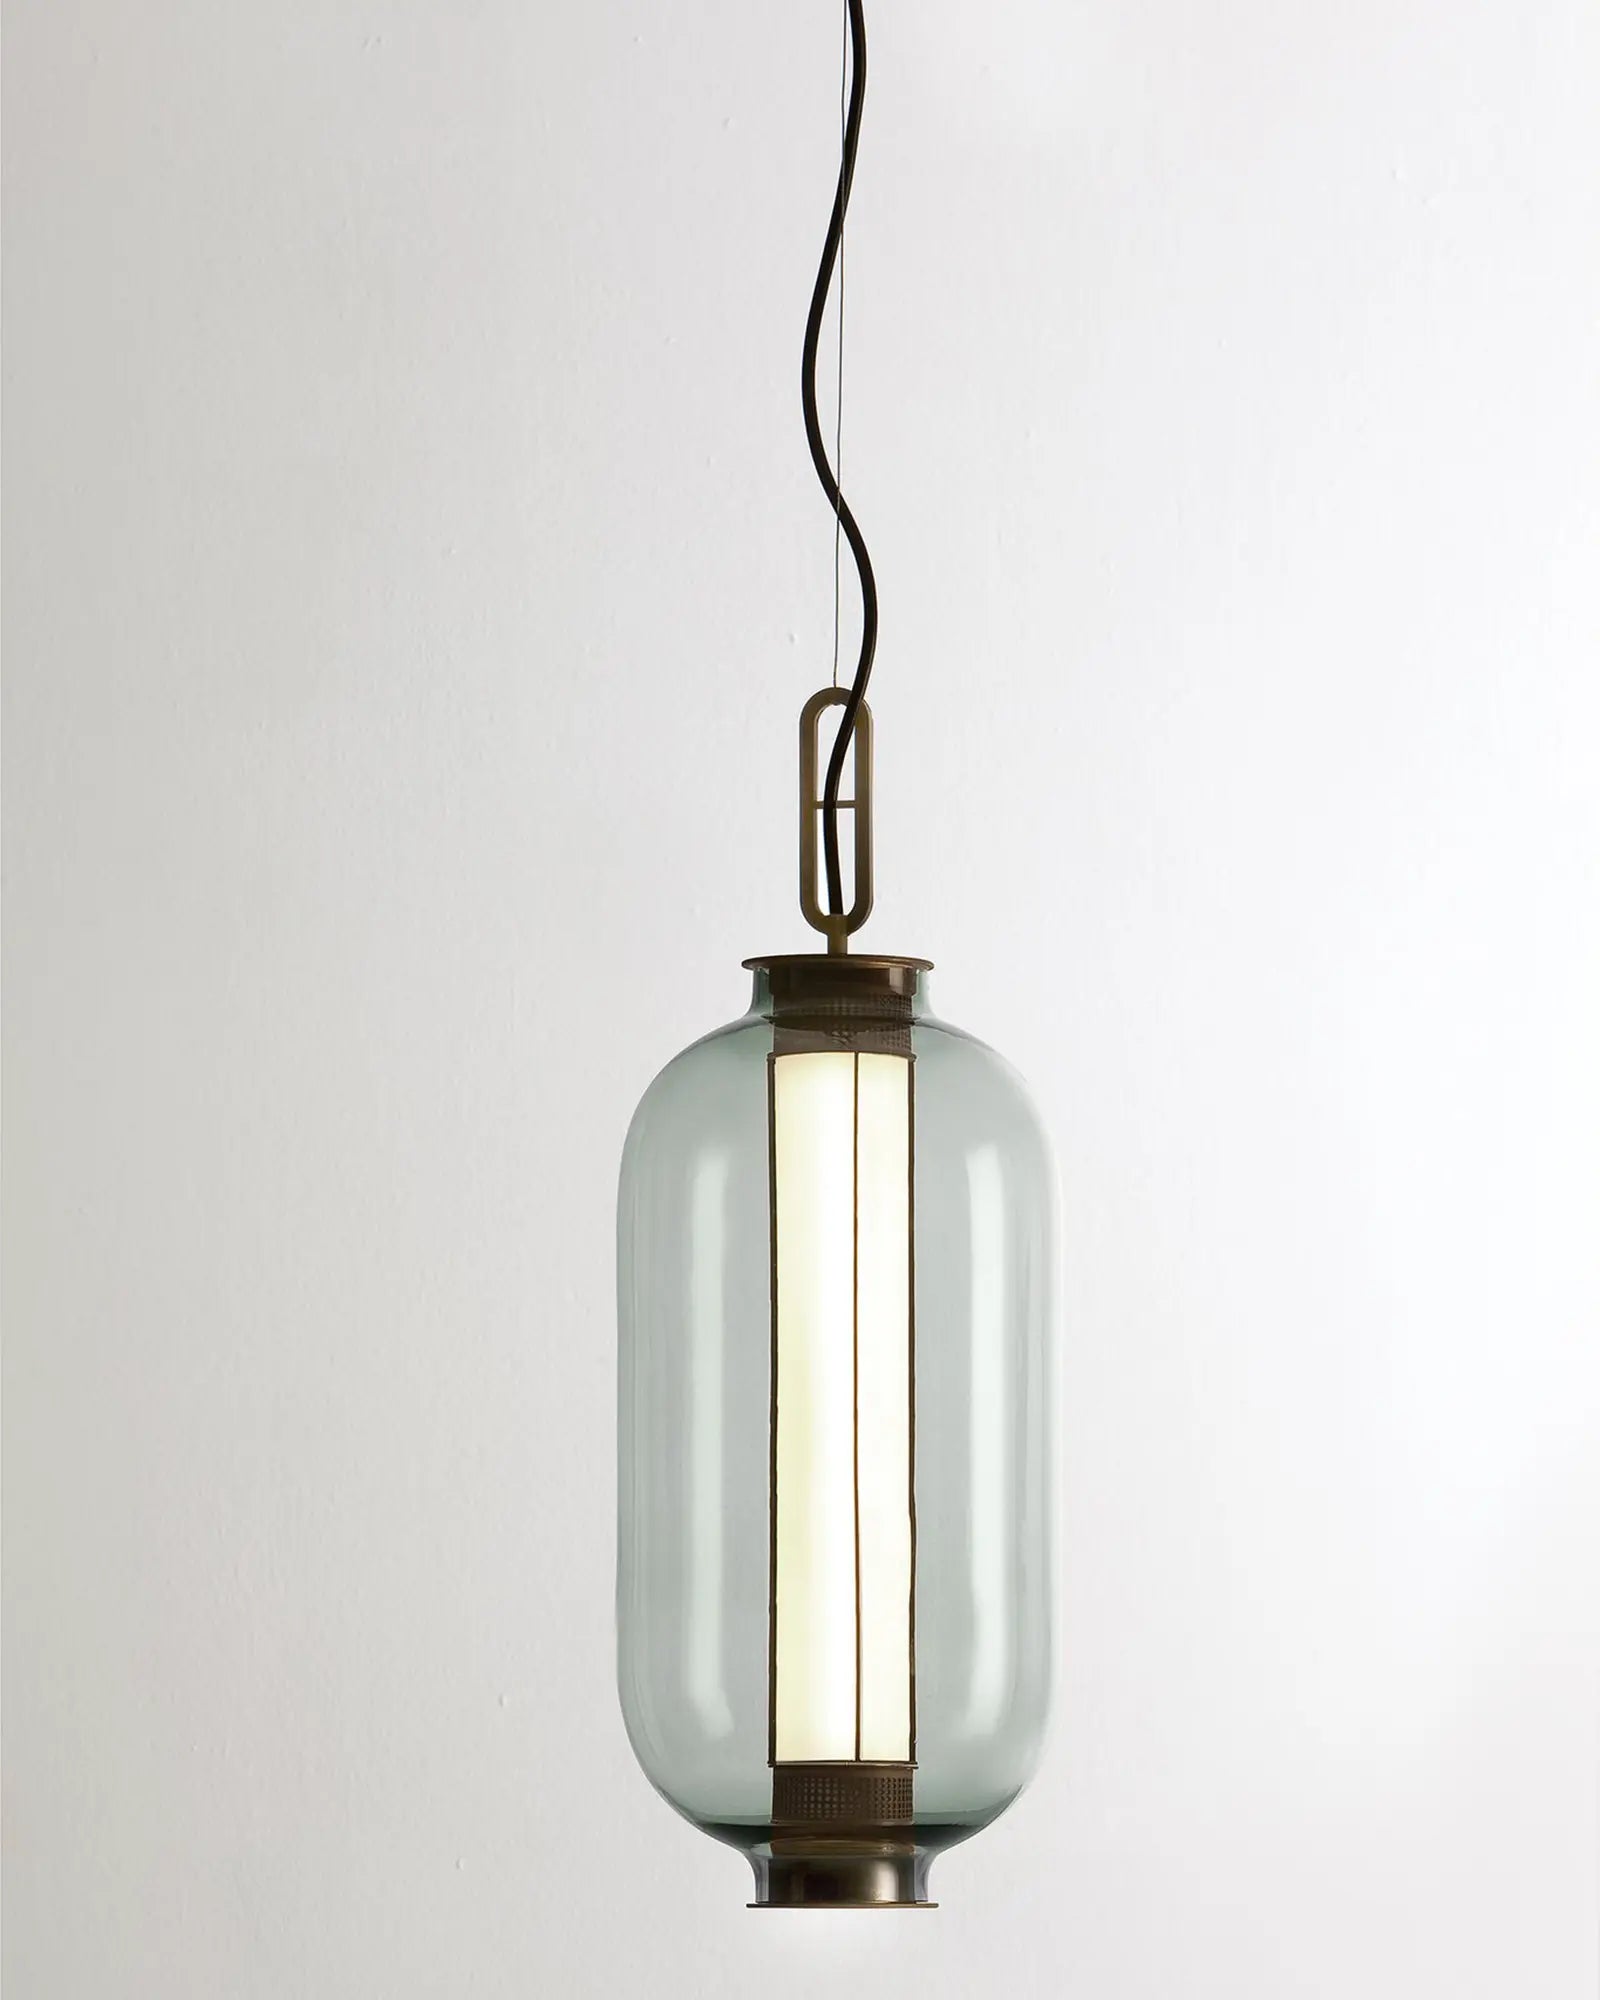 Bai Ba Ba tall bronze and blown glass Chinese lantern style pendant light grey glass